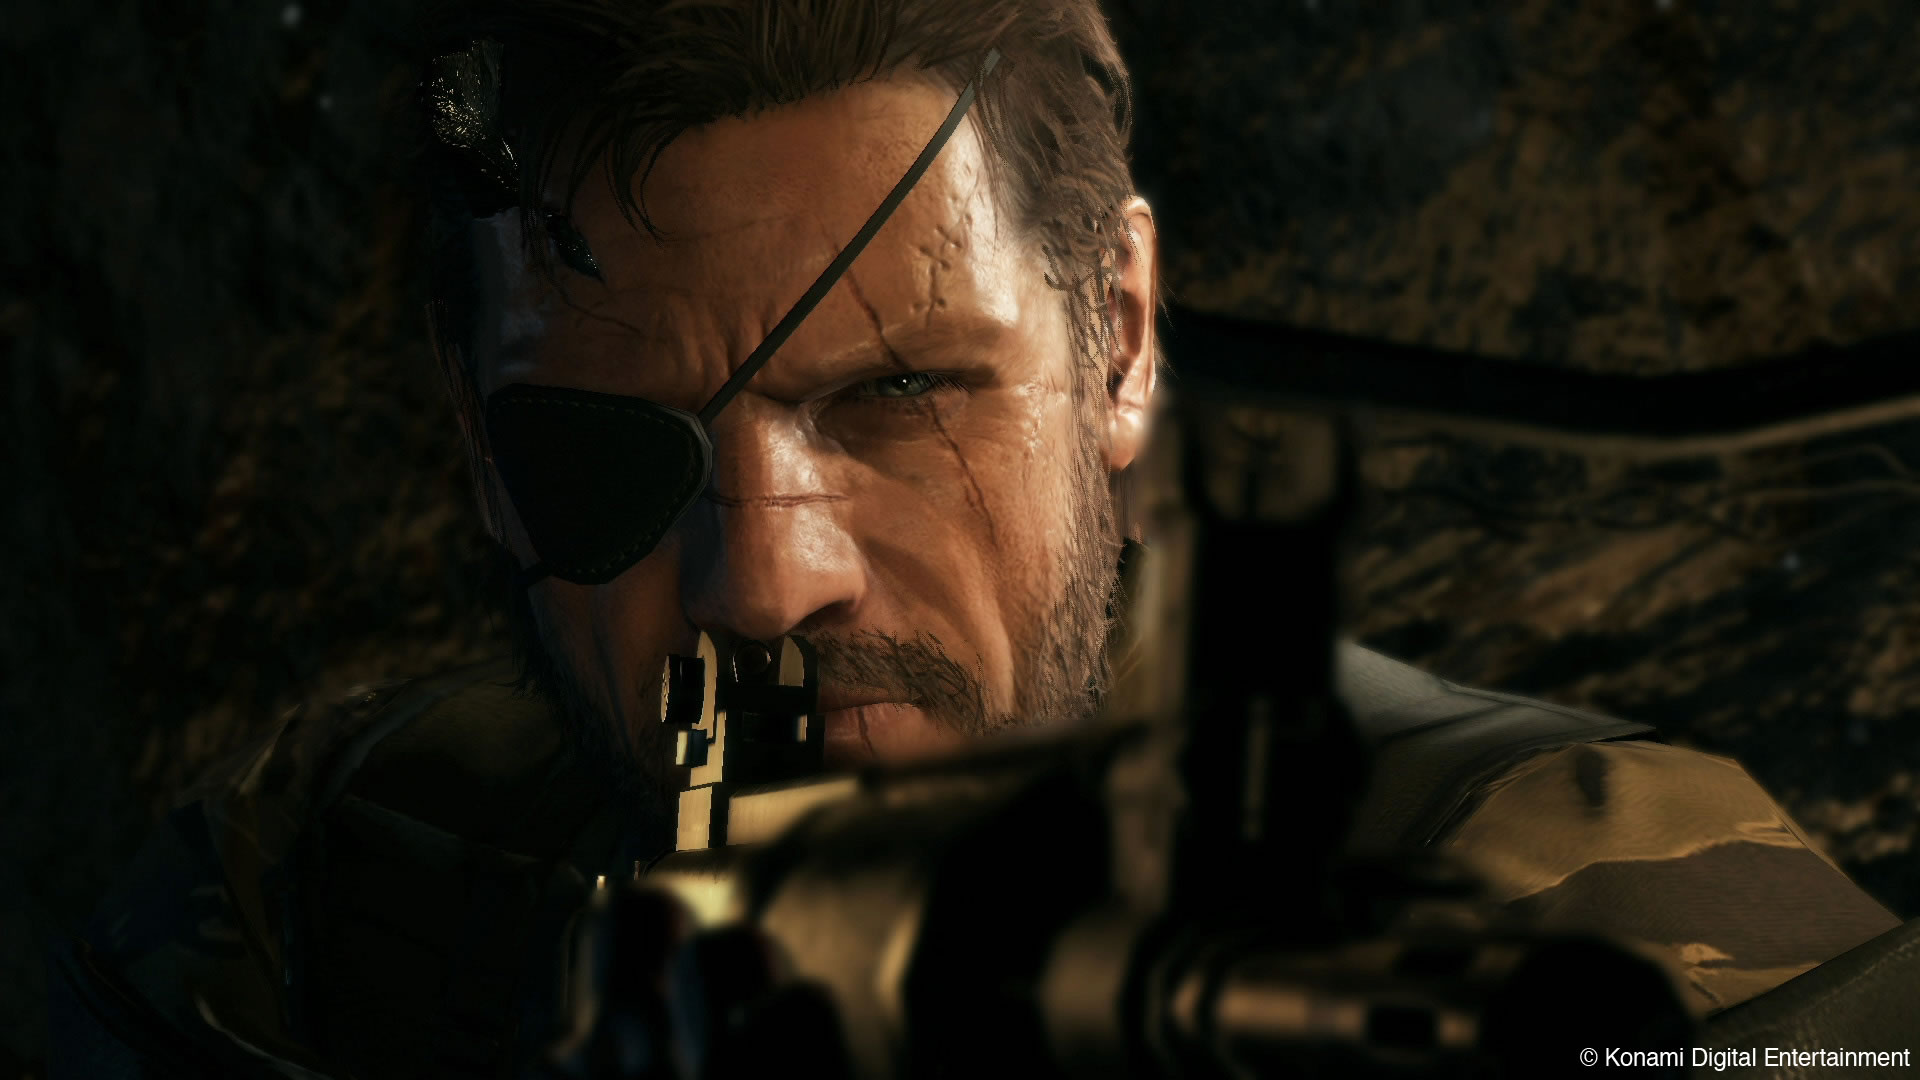 De lhumour stupide dans Metal Gear Solid V : The Phantom Pain